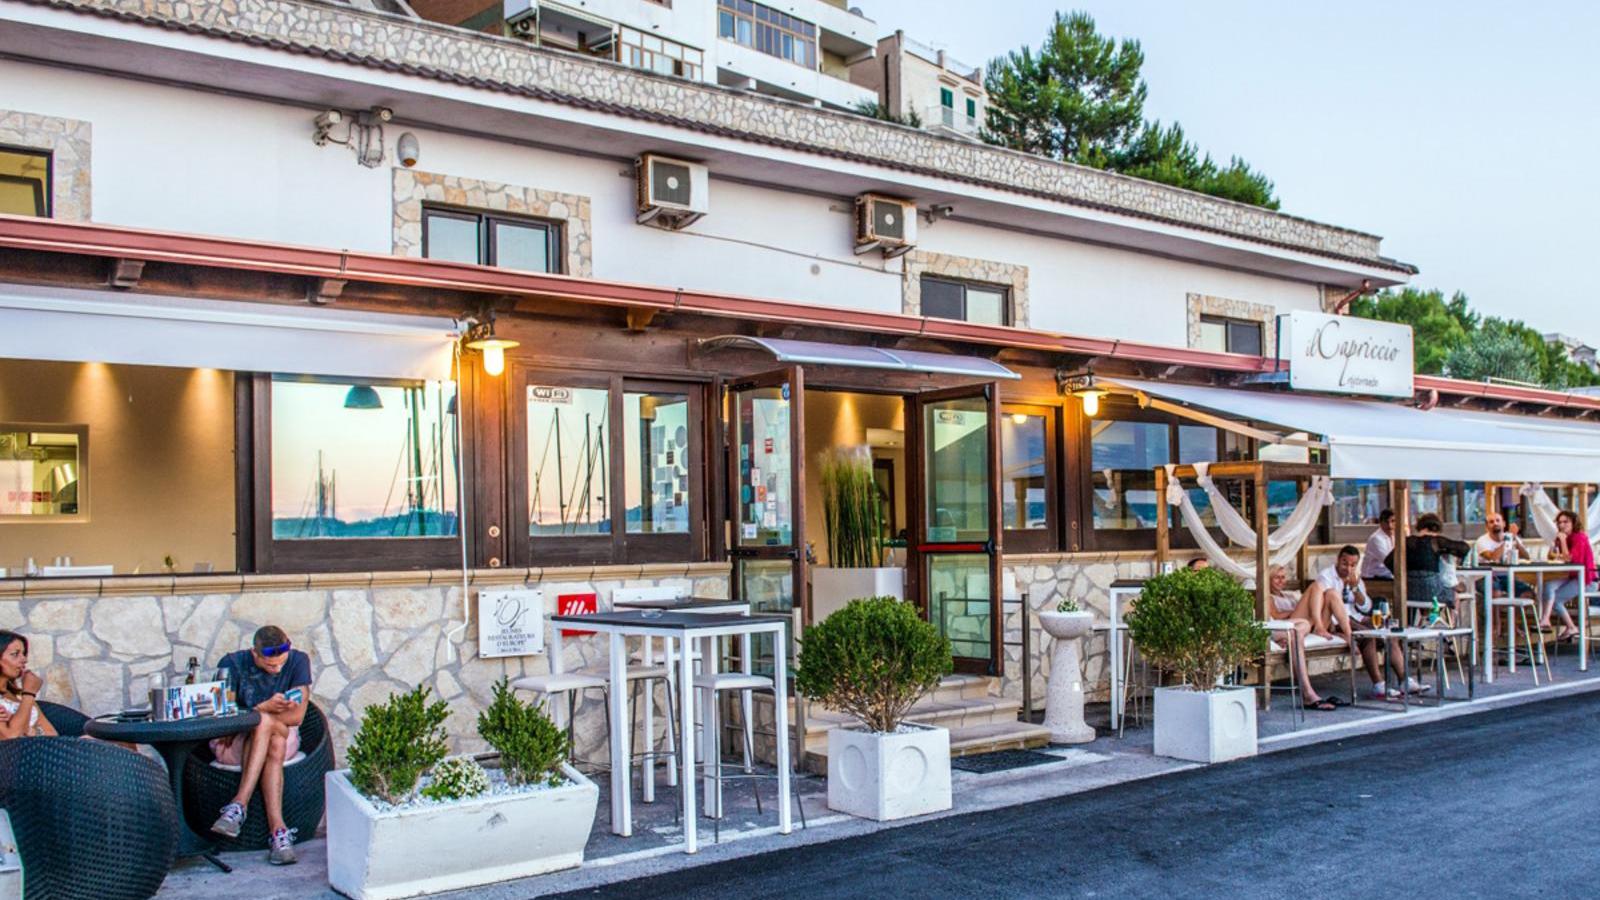 Miglior ristorante a Vieste - Il Capriccio | Localtourism.it